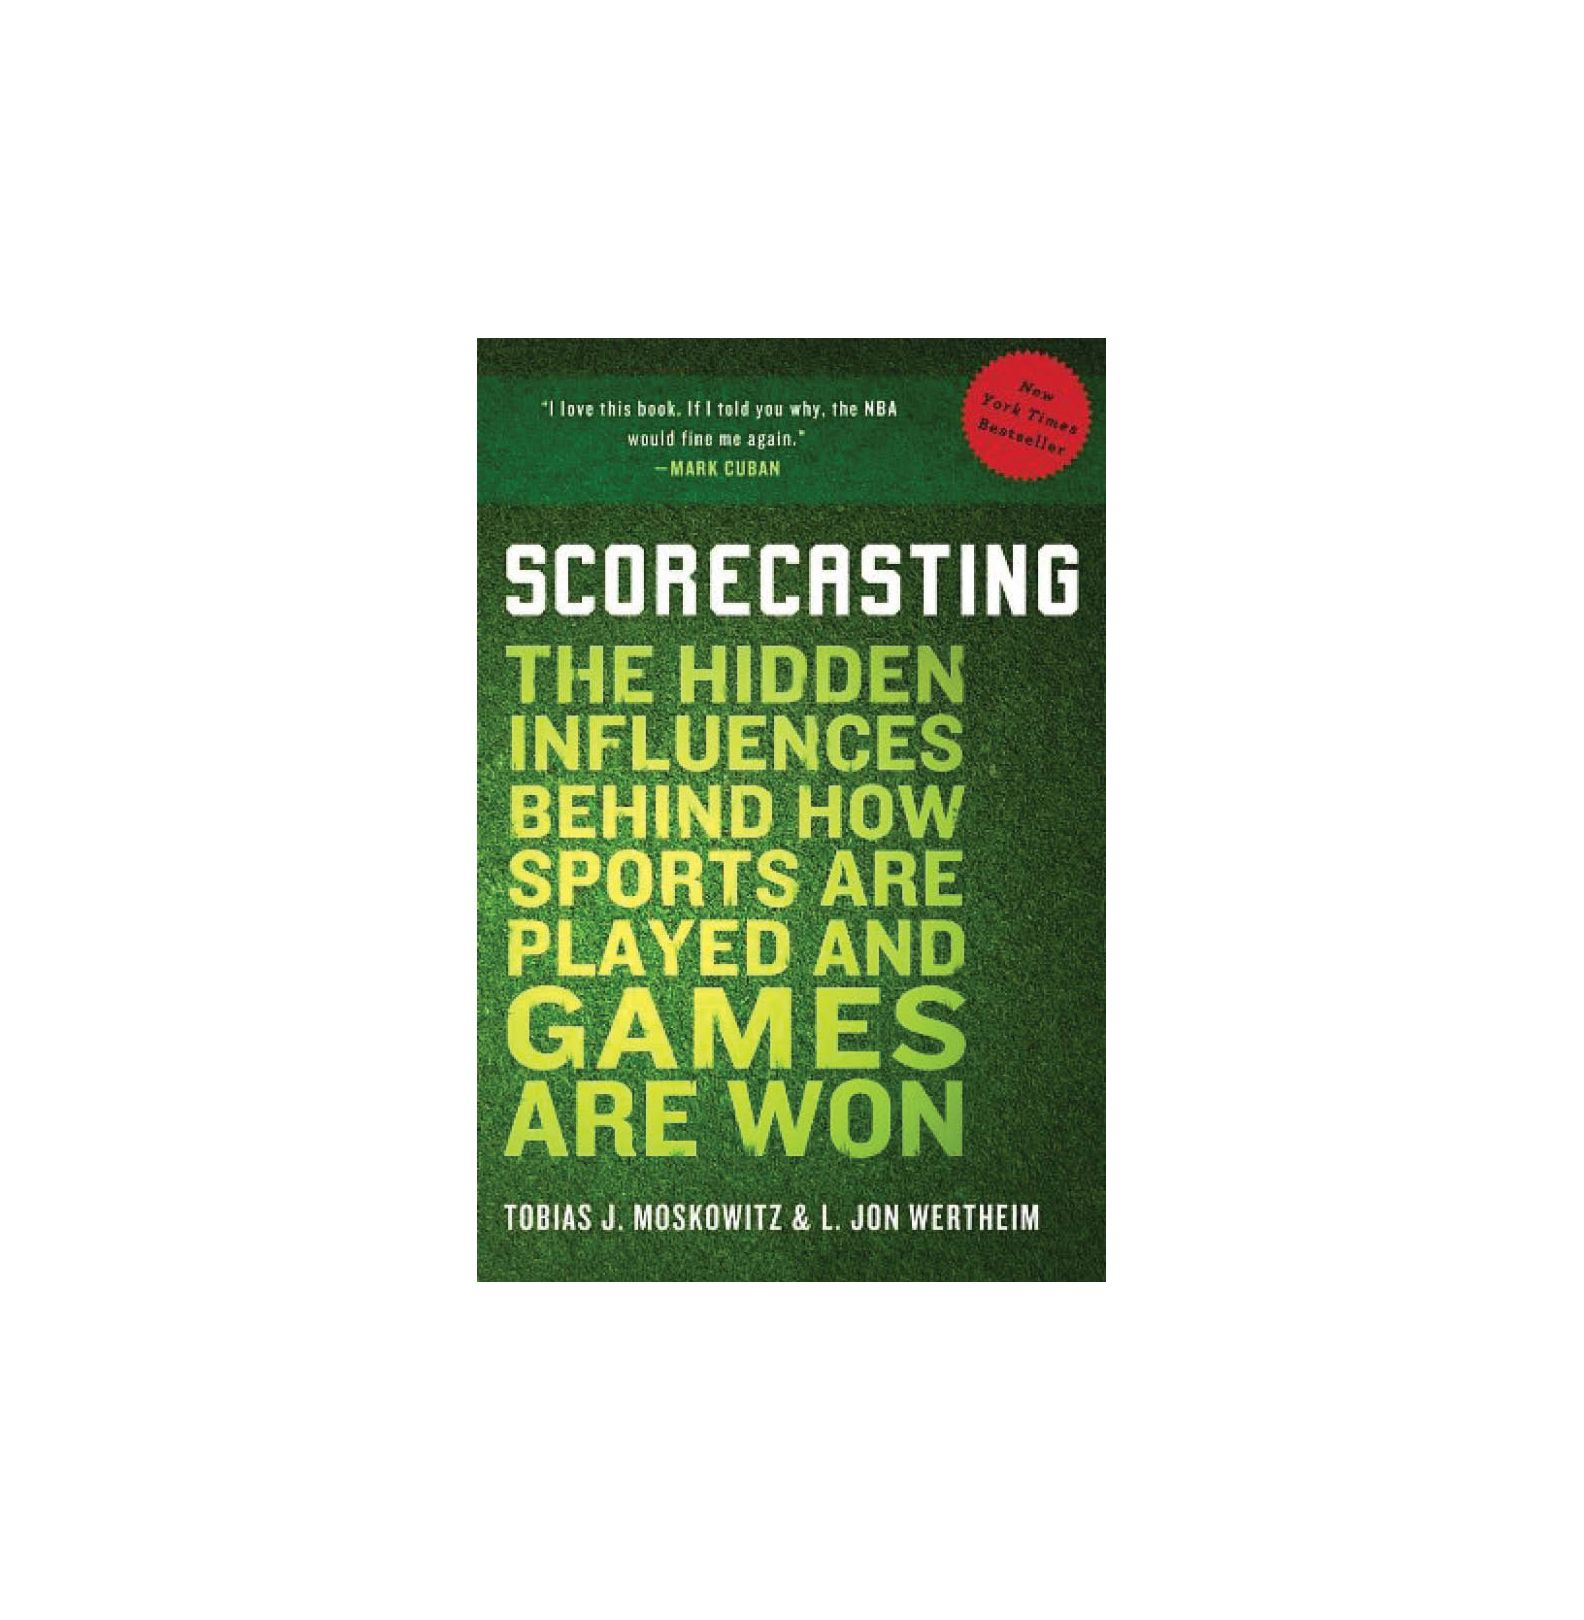 Scorecasting: Tobias Moskowitz ve L. Jon Wertheim tarafından, Sporun Nasıl Oynandığı ve Oyunun Nasıl Kazanıldığı Arkasındaki Gizli Etkiler